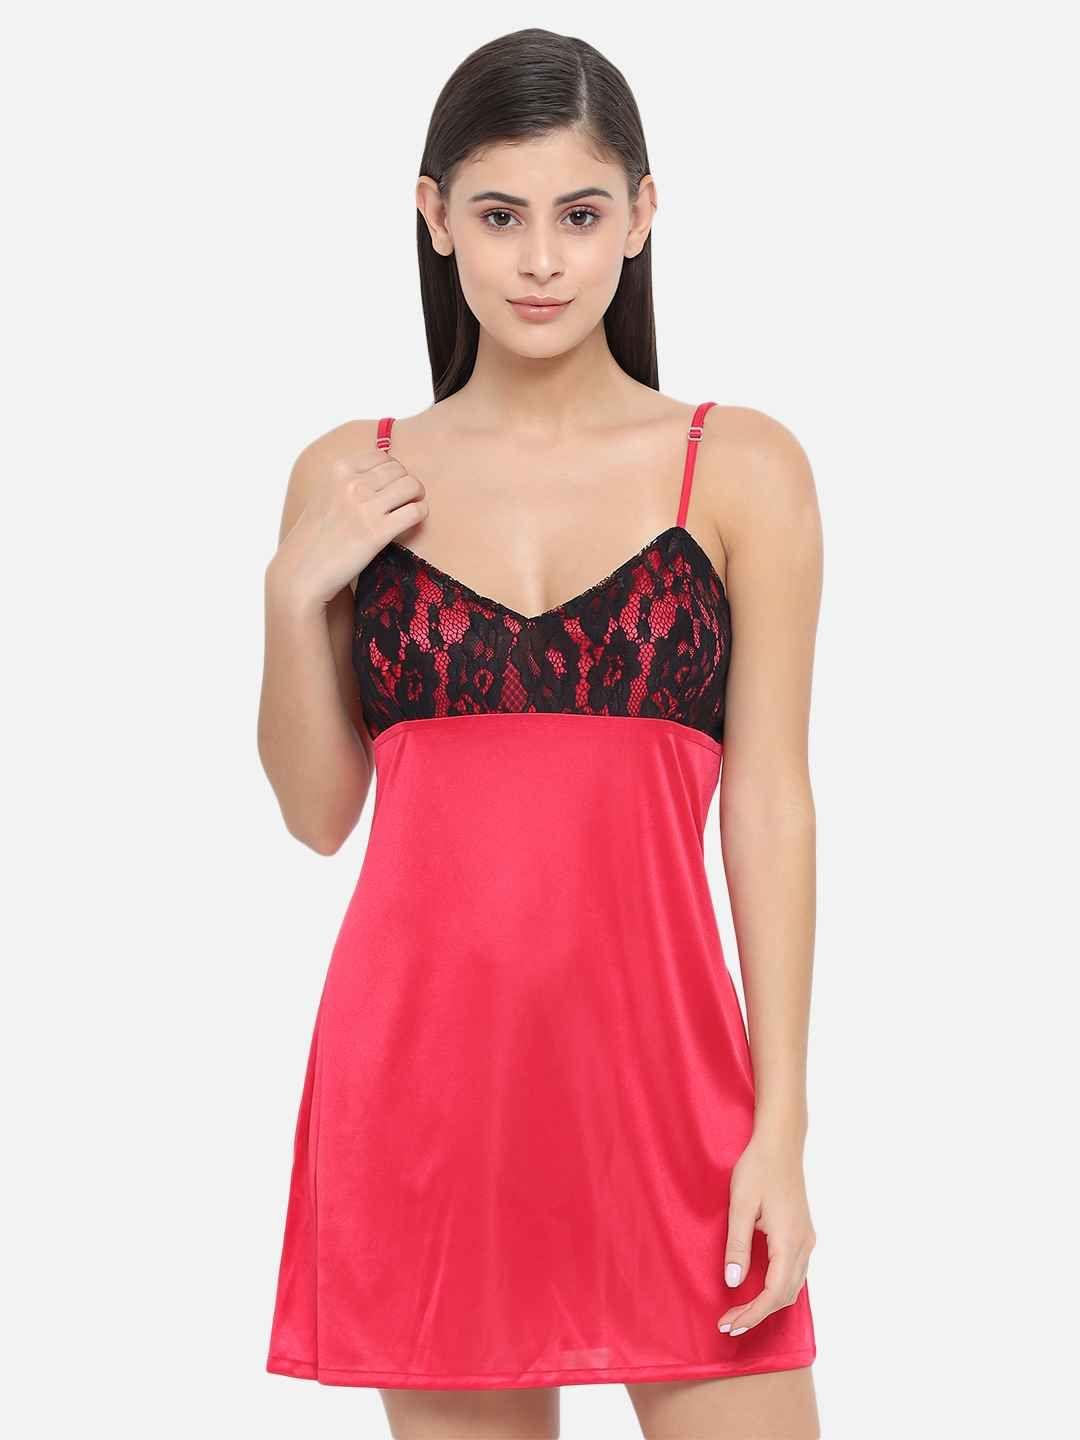 Honeymoon Women Robe and Lingerie Set - Buy Honeymoon Women Robe and  Lingerie Set Online at Best Prices in India | Flipkart.com